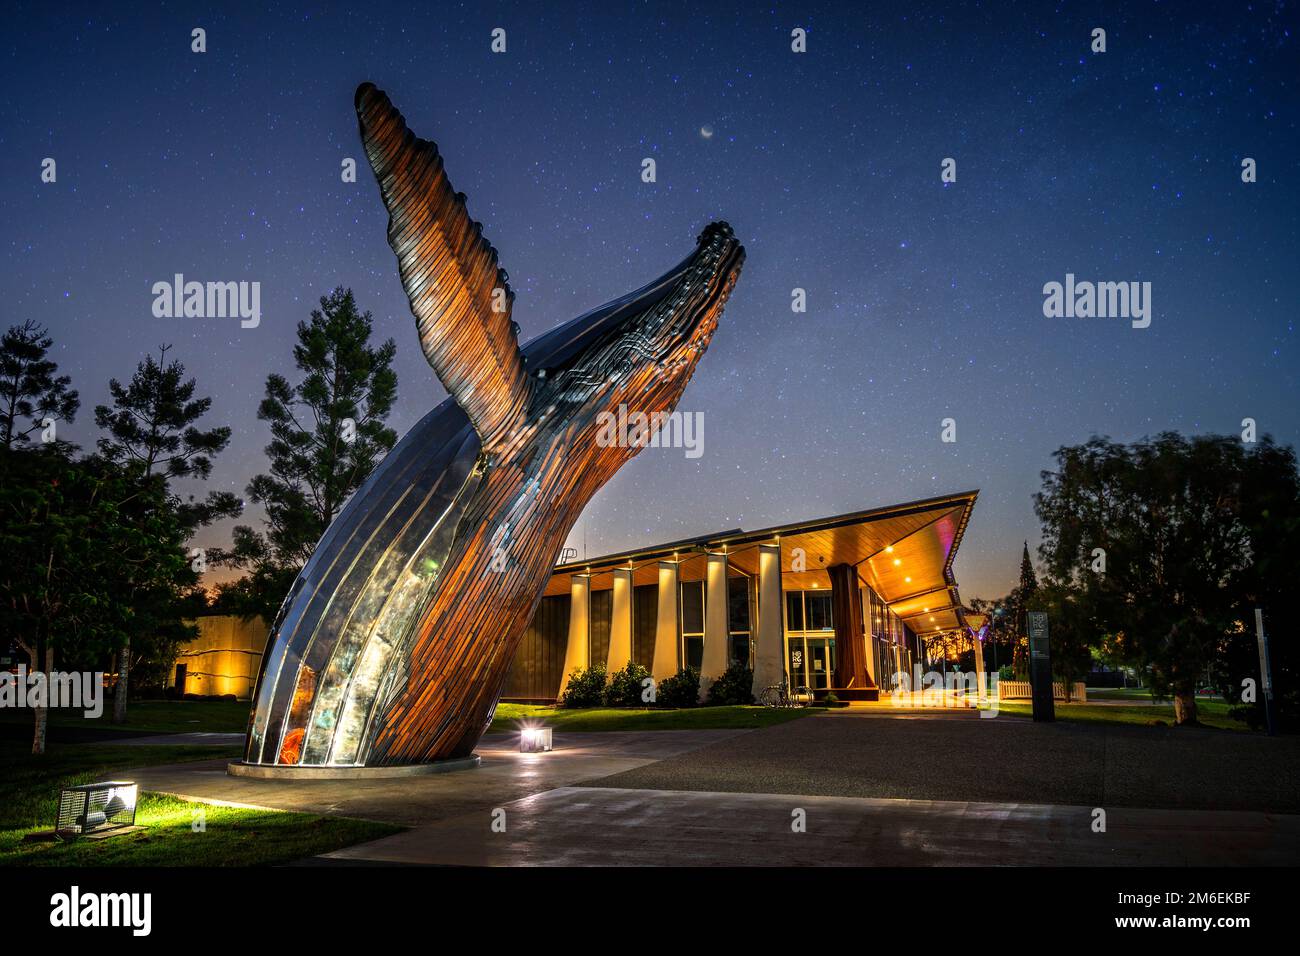 Sculpture de Nala la baleine à bosse a été illuminée le soir à l'extérieur de la galerie régionale de la côte du Fraser. Hervey Bay Queensland Australie Banque D'Images